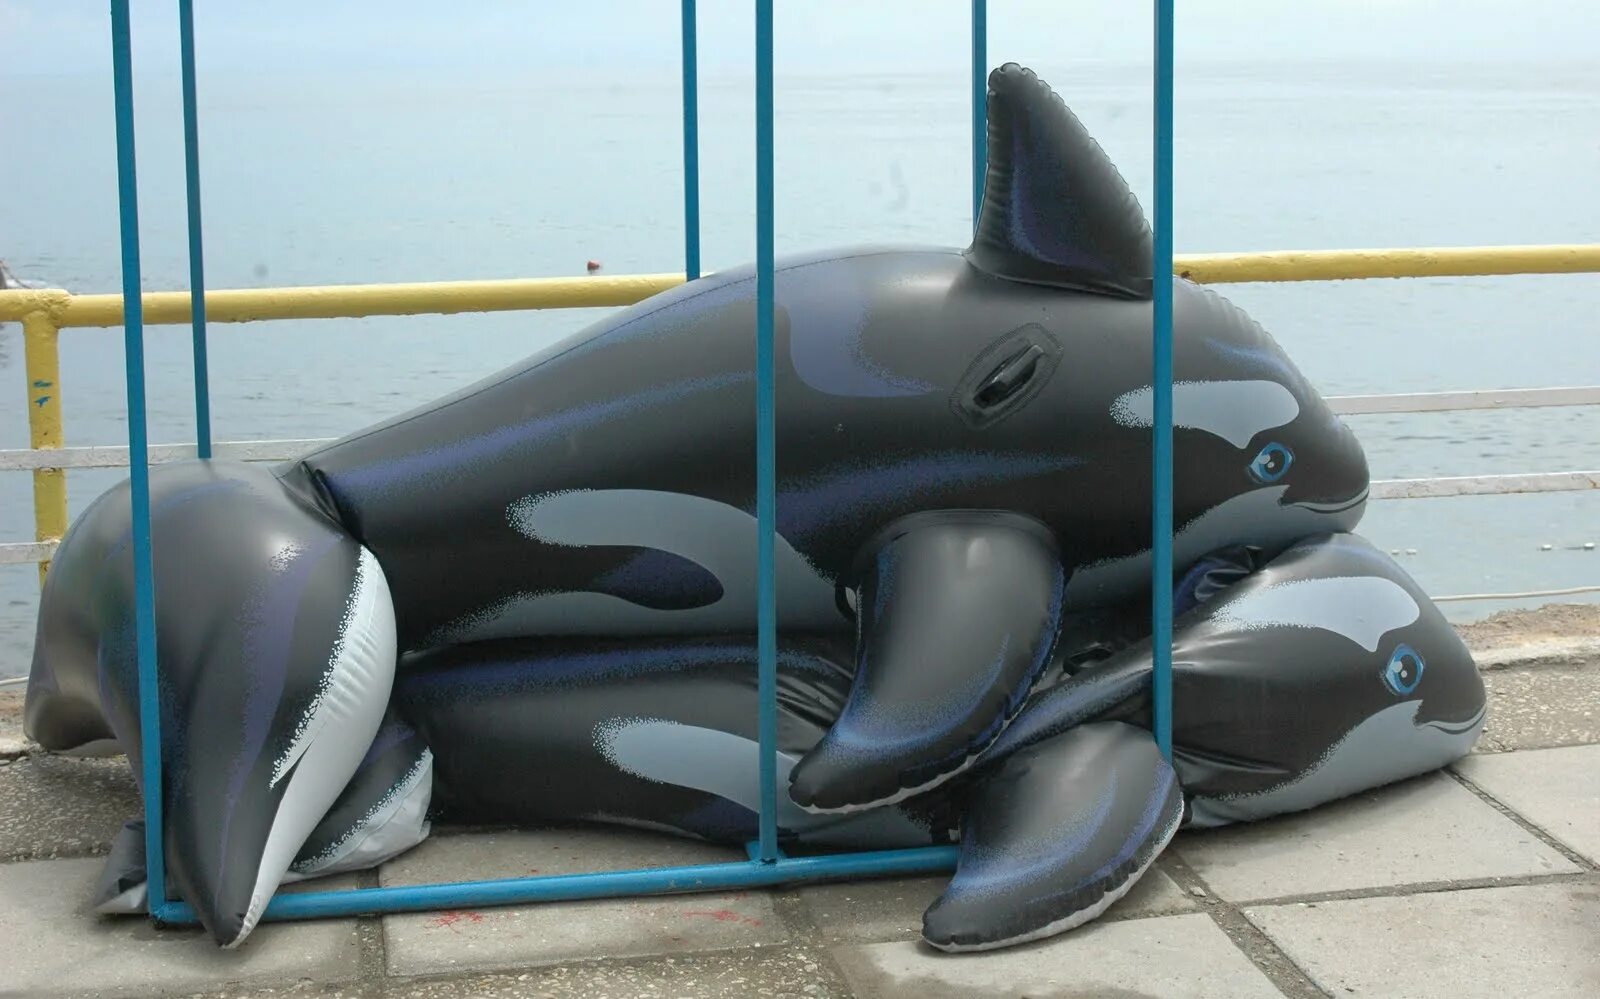 Надувные дельфины. Надувная Касатка или Дельфин. Надувной Дельфин 2 метра. Надувная игрушка-наездник Intex Дельфин 58535.